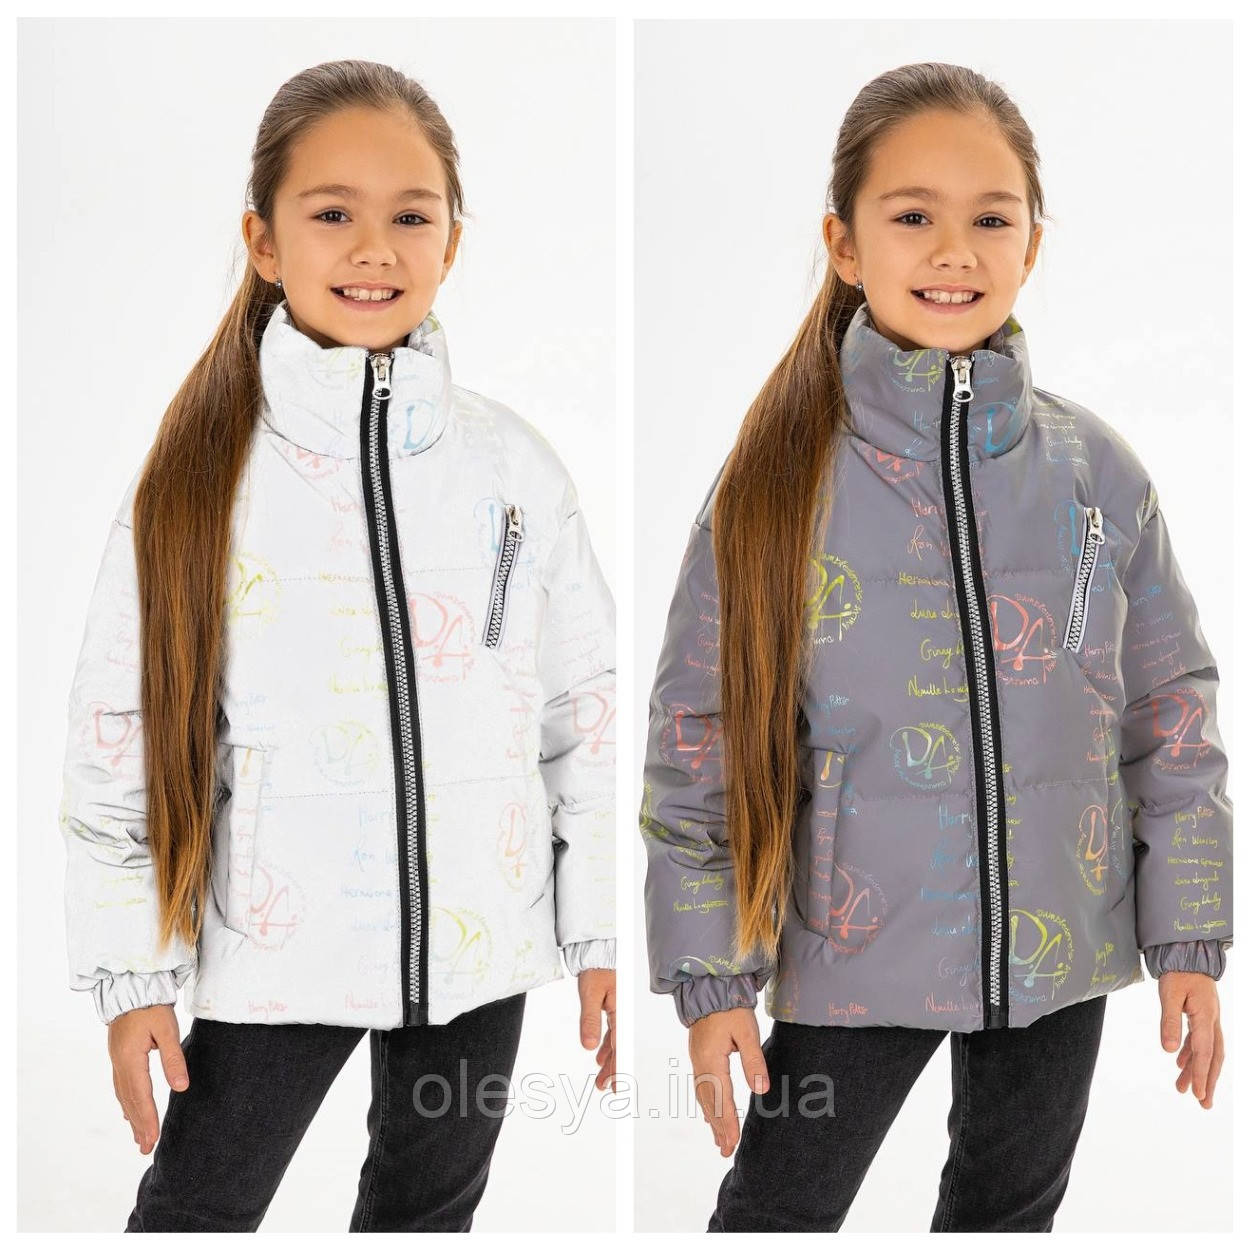 Модна світловідбиваюча куртка для дівчаток Герміона тм MyChance Розміри 146  164